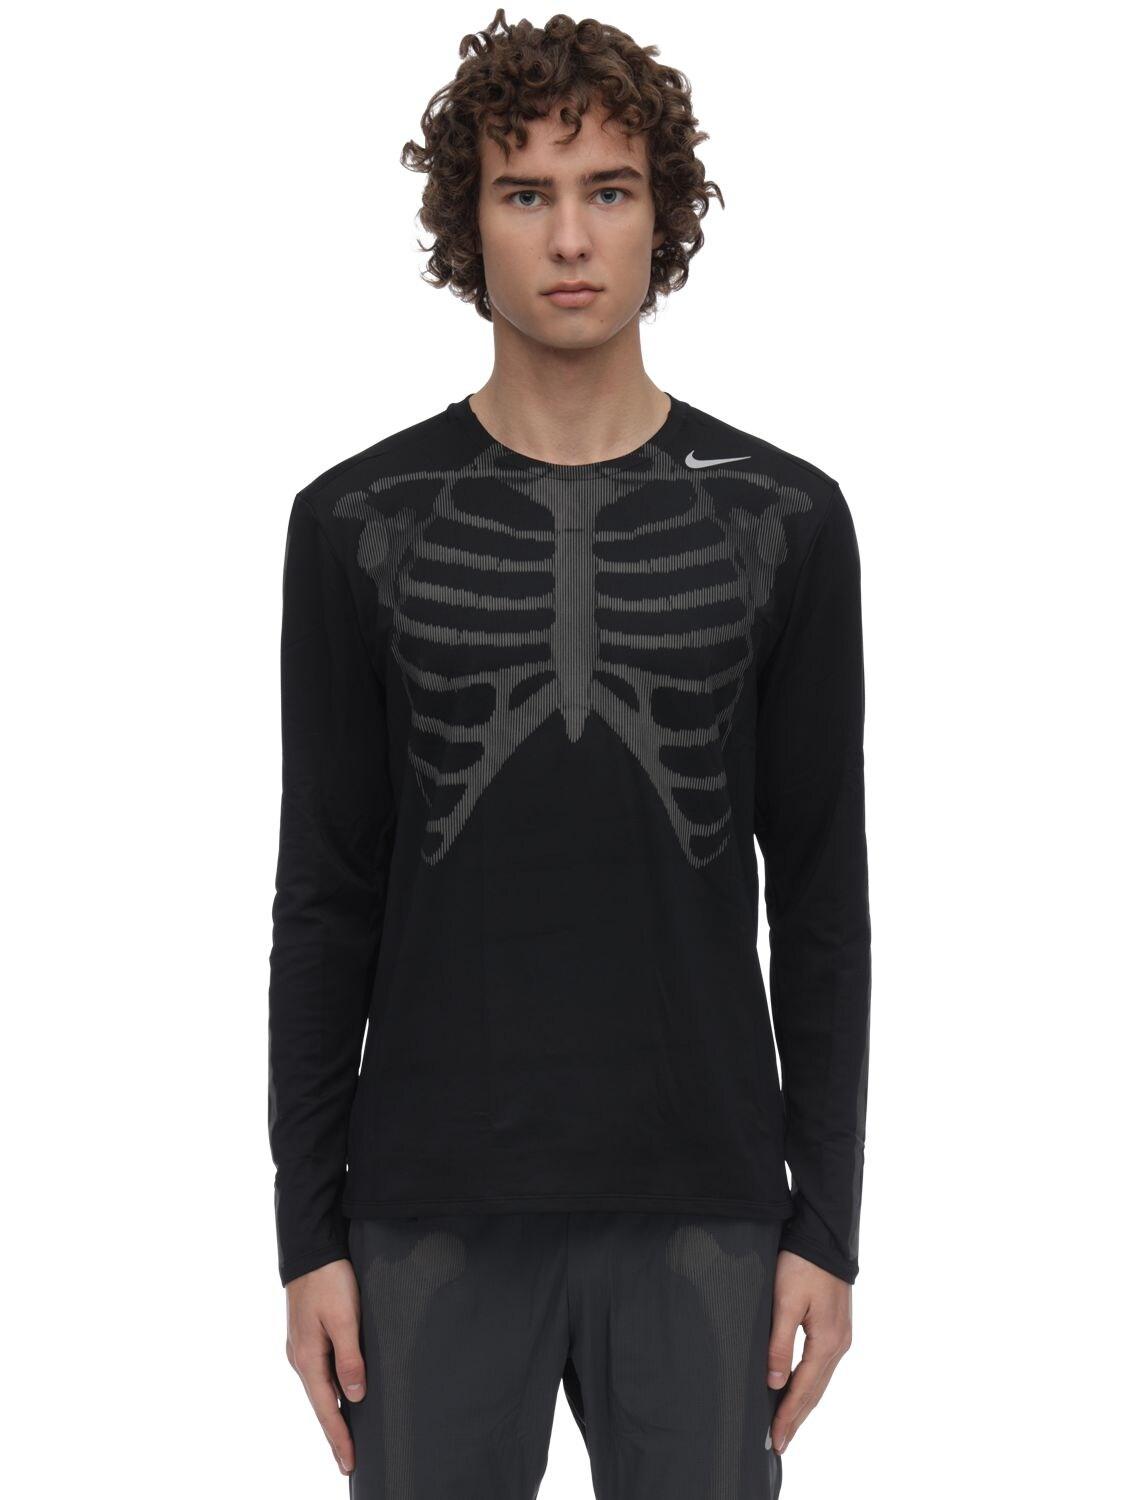 Nike Nrg Skeleton Long Sleeve Top in 